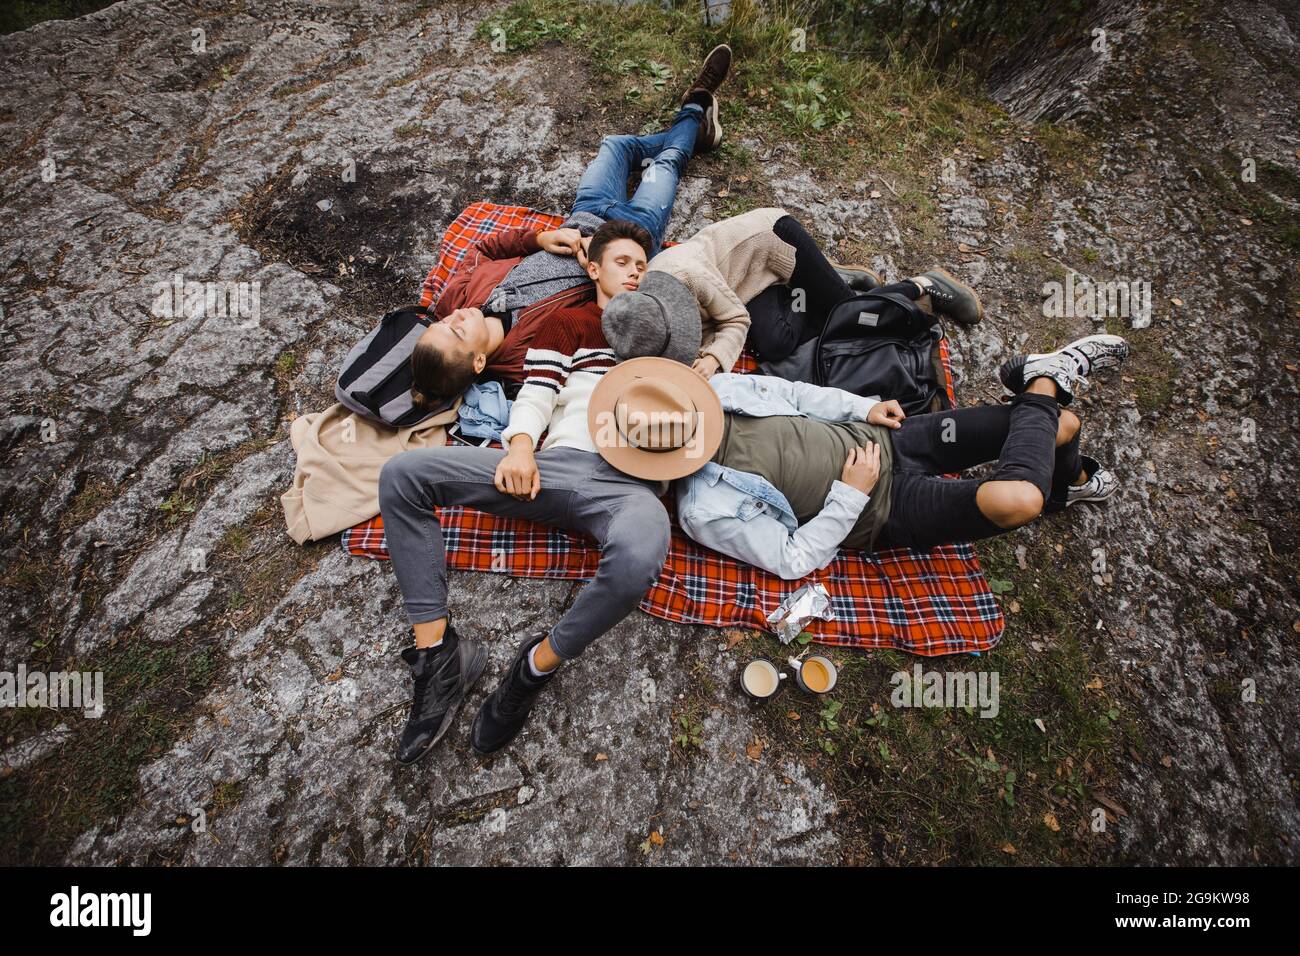 Par-dessus le groupe de voyageurs masculins couché sur un terrain rocailleux tout en dormant dans la nature Banque D'Images